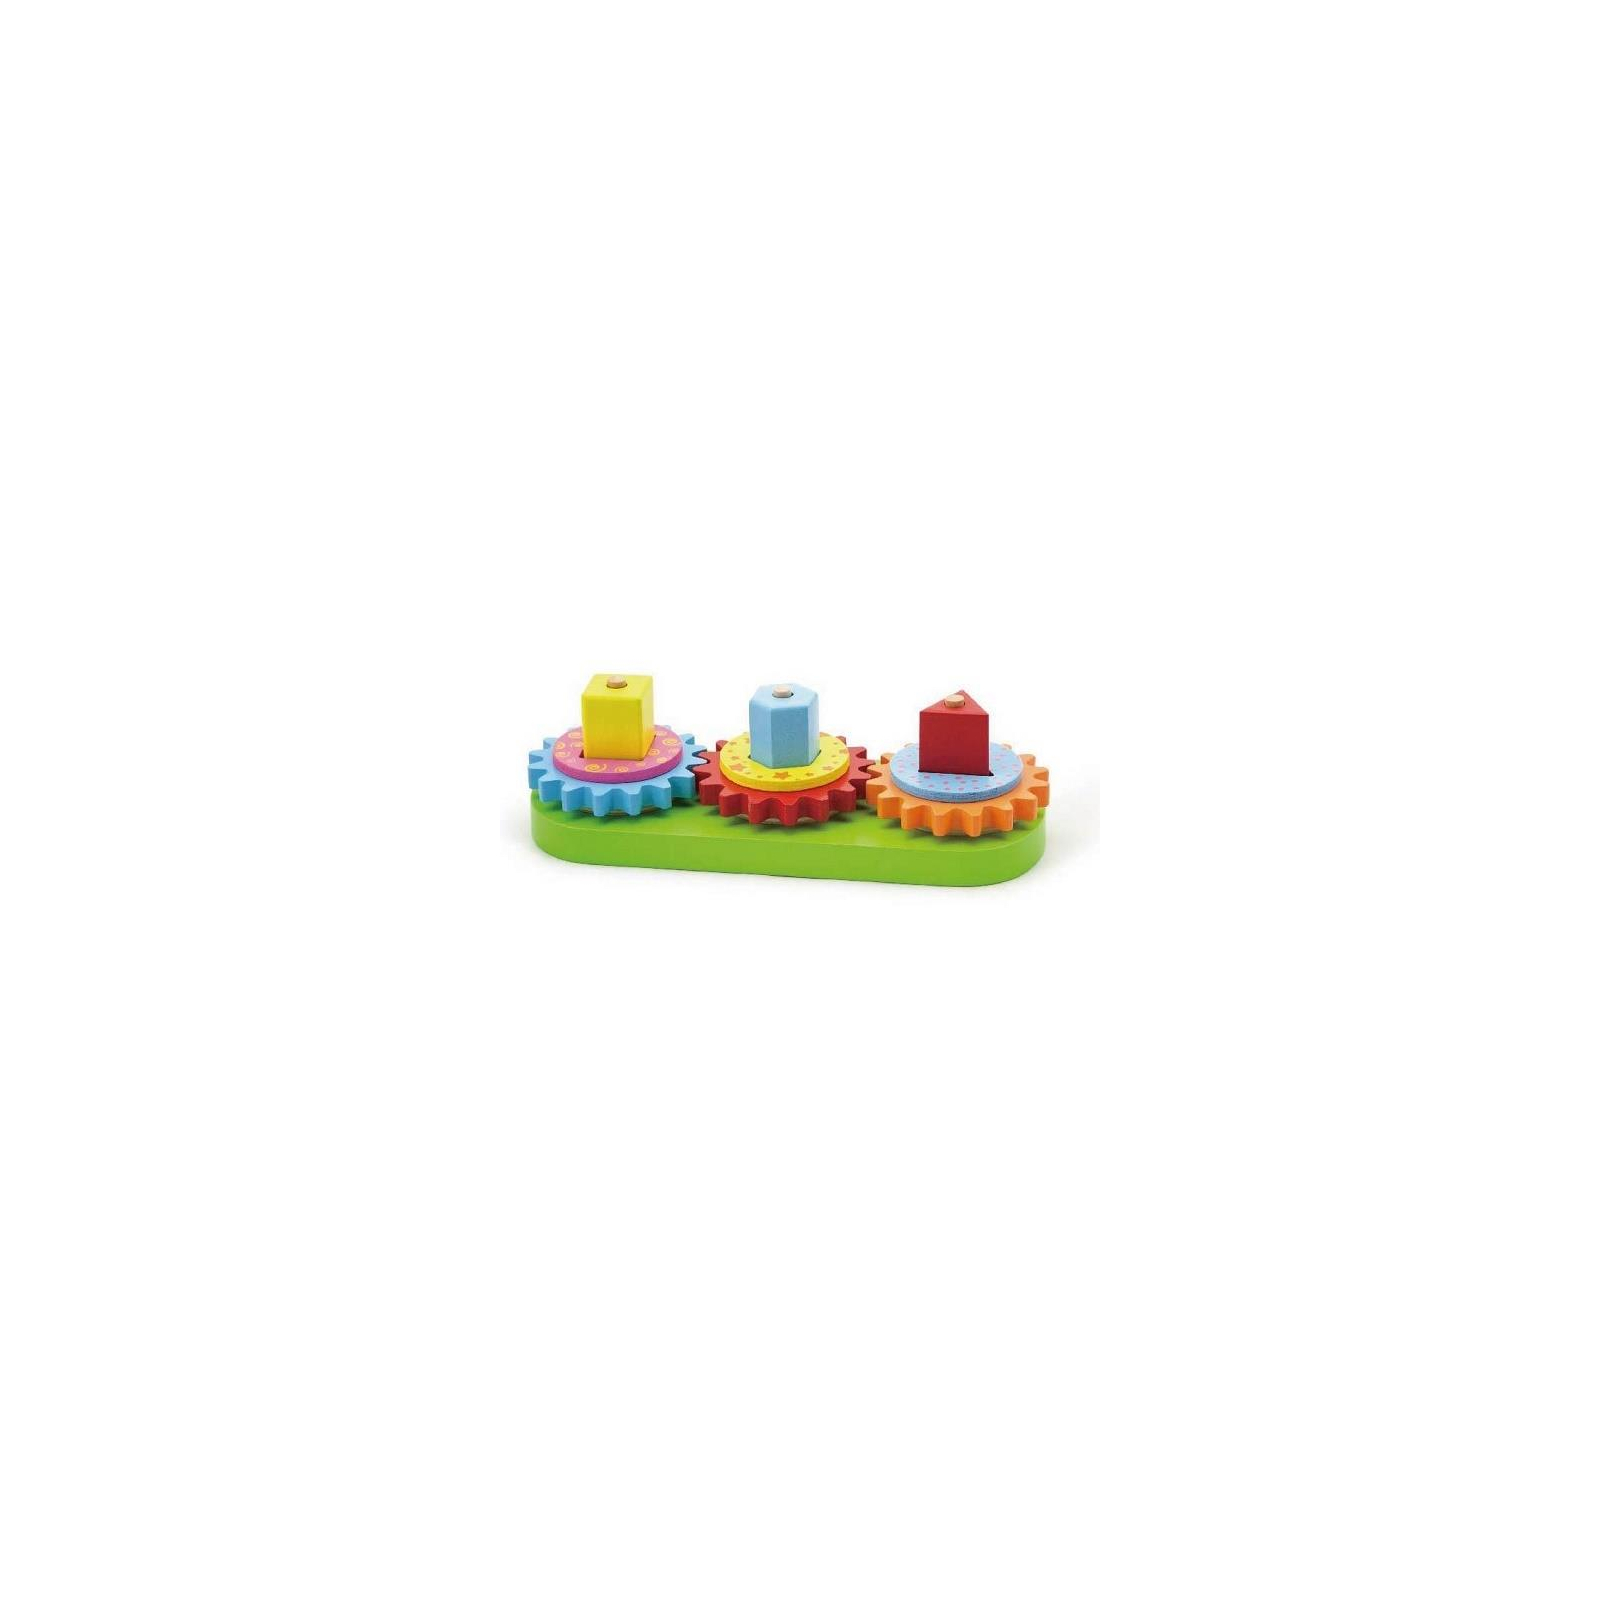 Развивающая игрушка Viga Toys Шестеренки (59611)